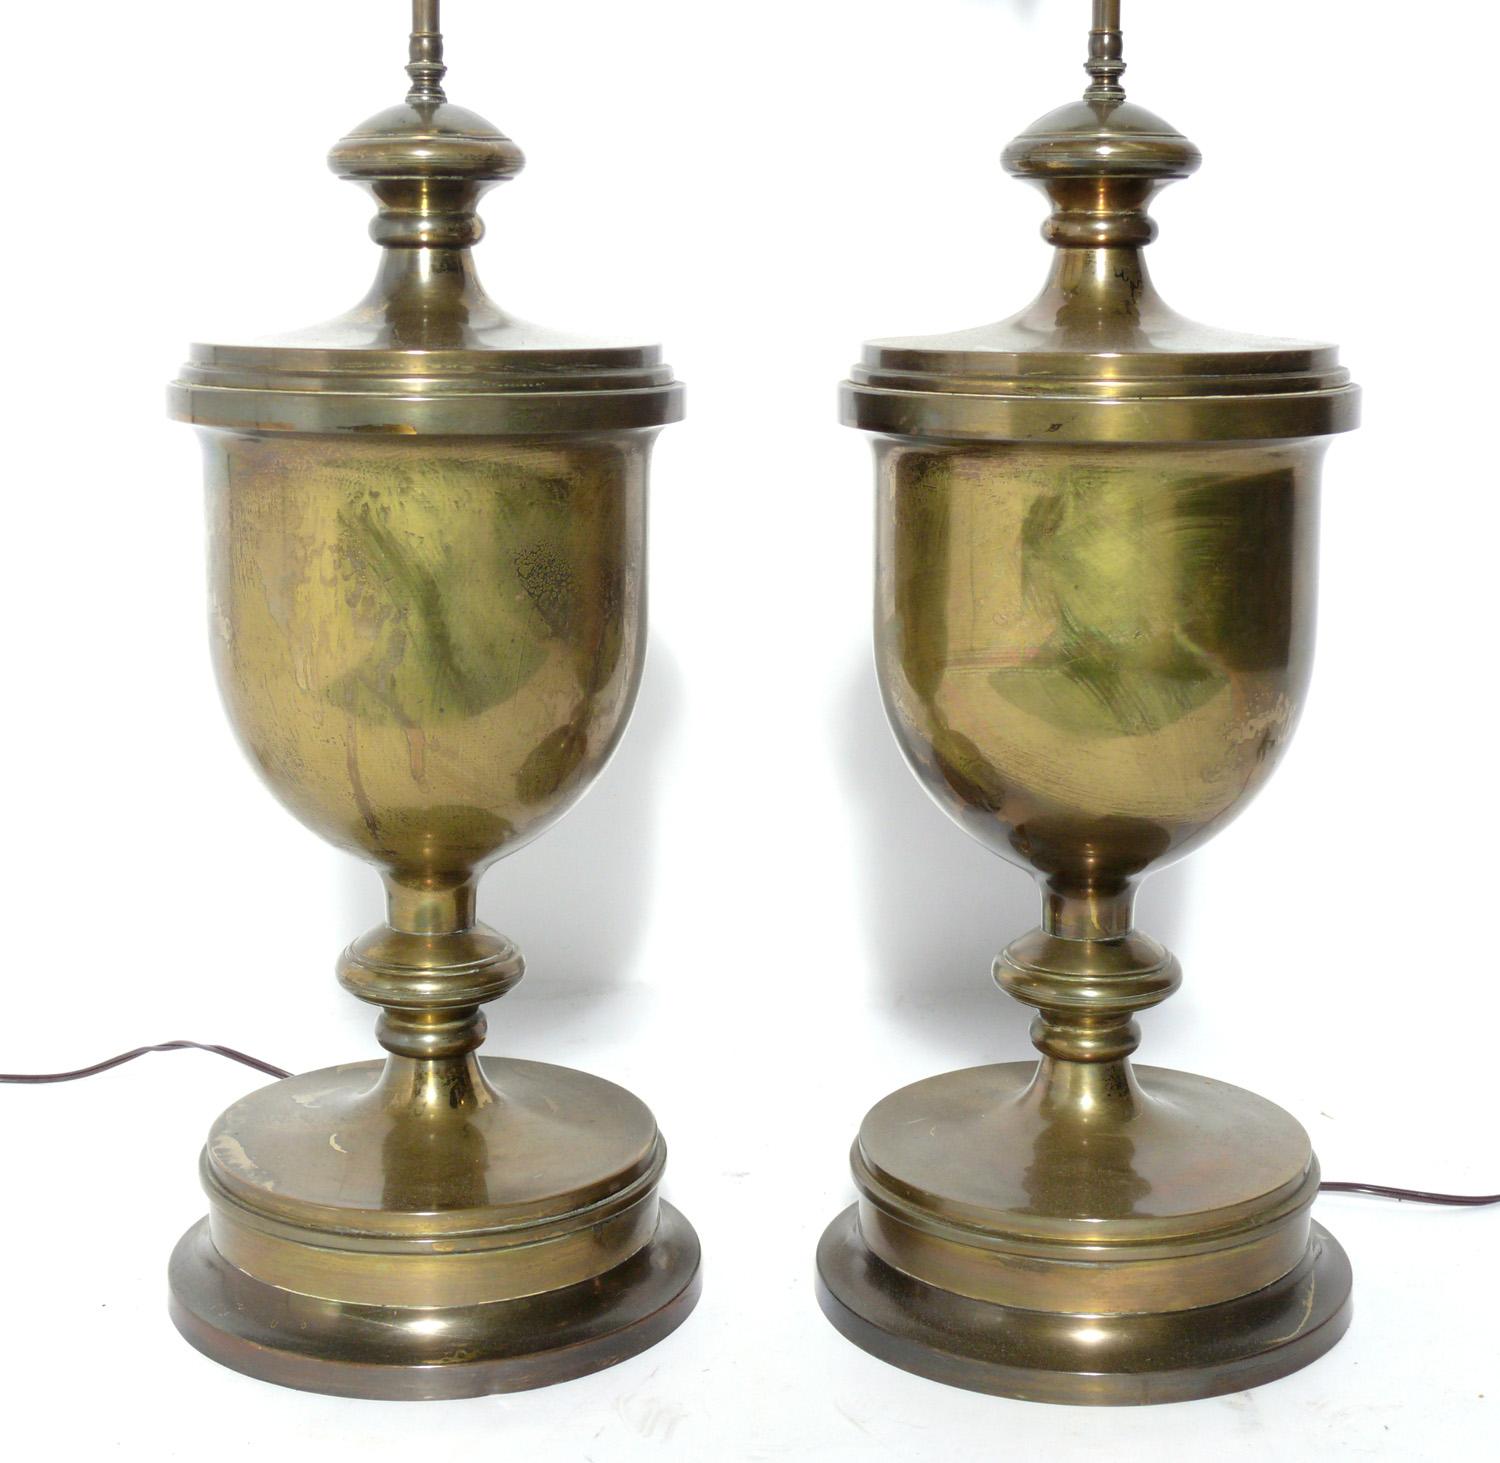 Lampes-urnes à grande échelle en laiton anglais, Angleterre, vers les années 1940. Ils conservent leur magnifique patine d'origine sur le laiton. Ils ont été recâblés et sont prêts à être utilisés. Le prix indiqué comprend les teintes.